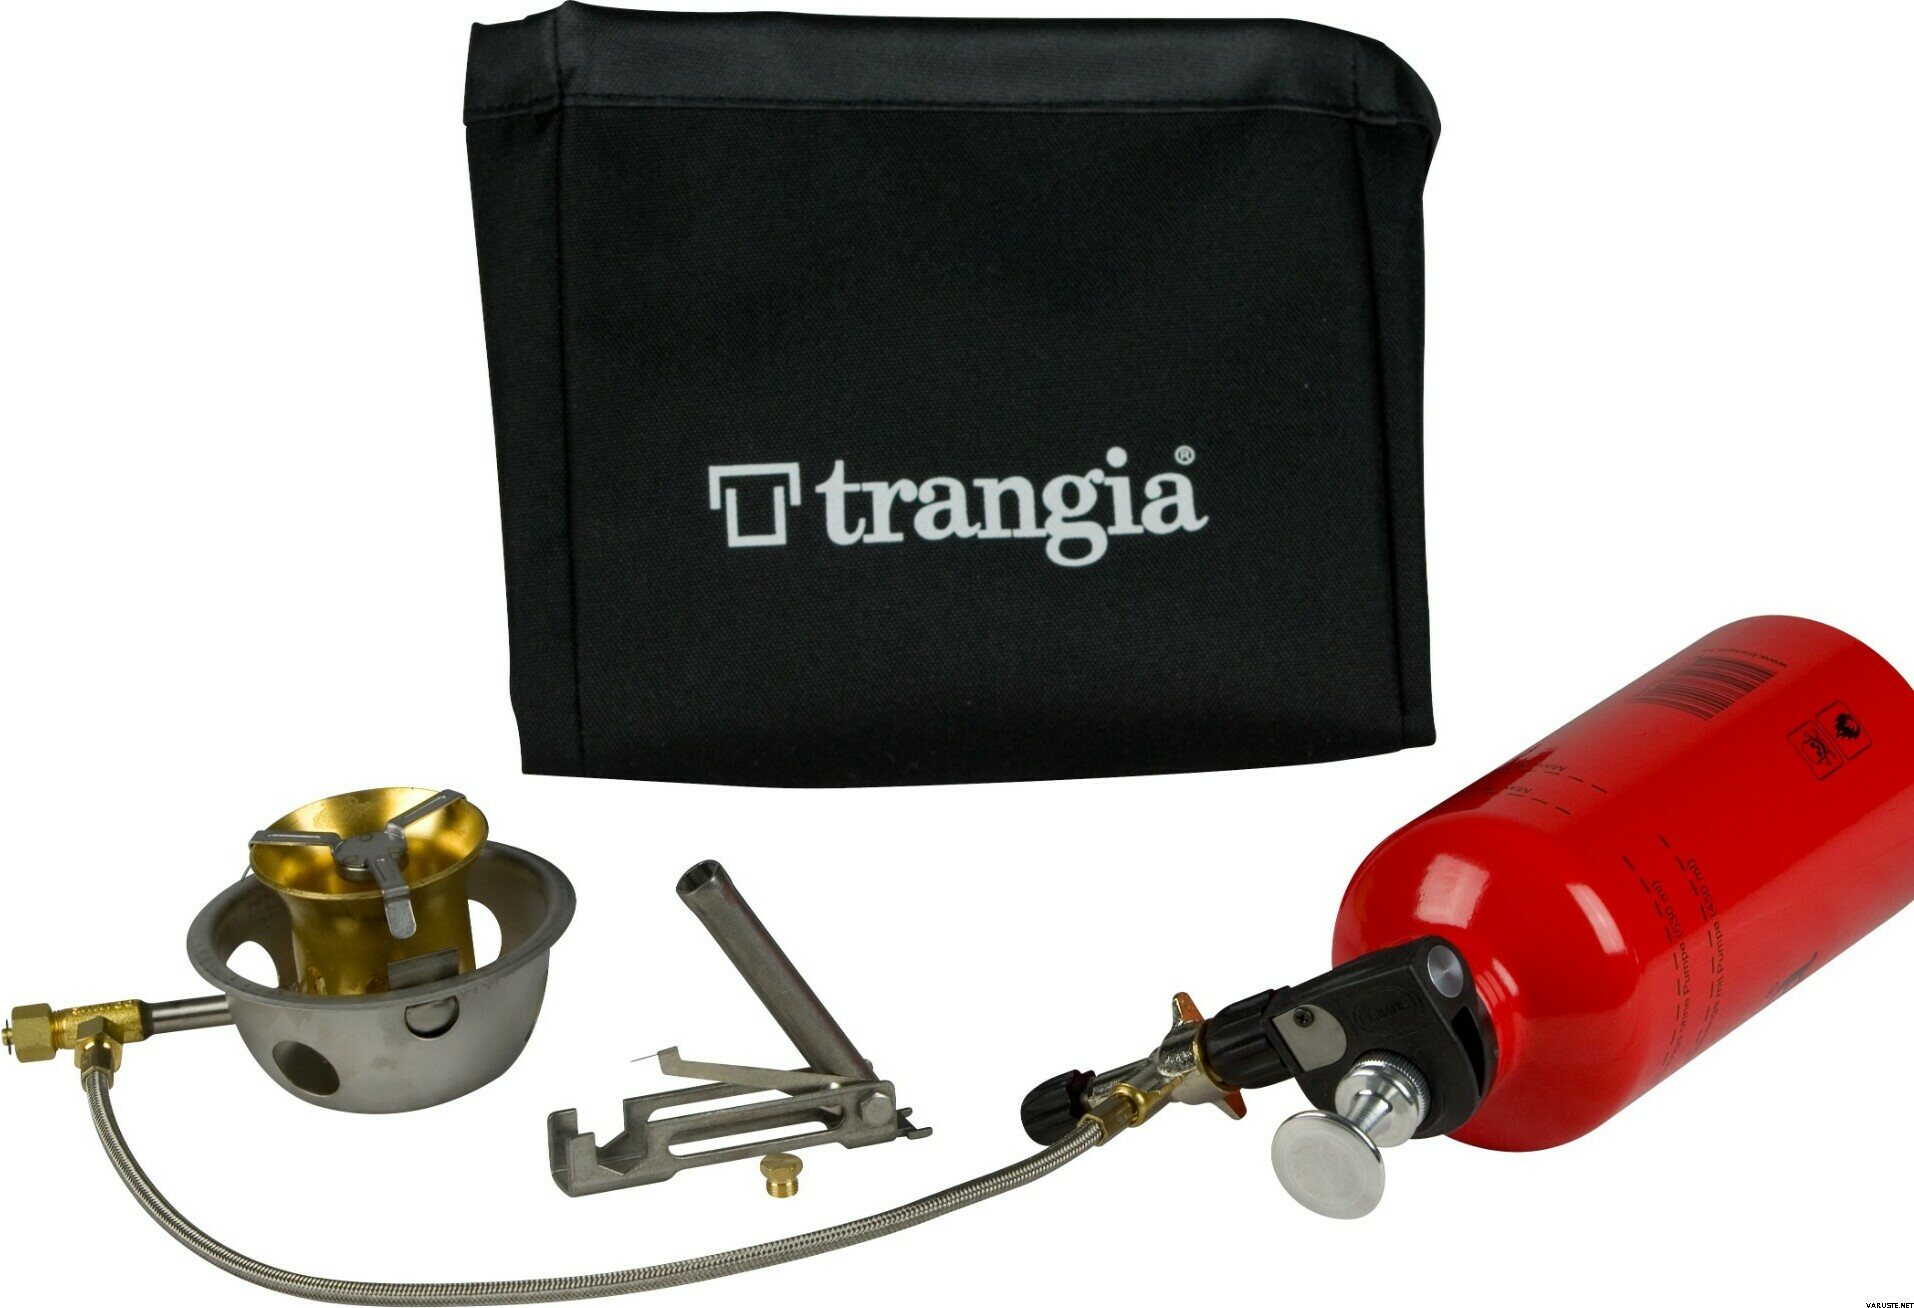 Trangia MultiFuel X2 + 0.6 l fuel bottle | バーナー | Varuste.net